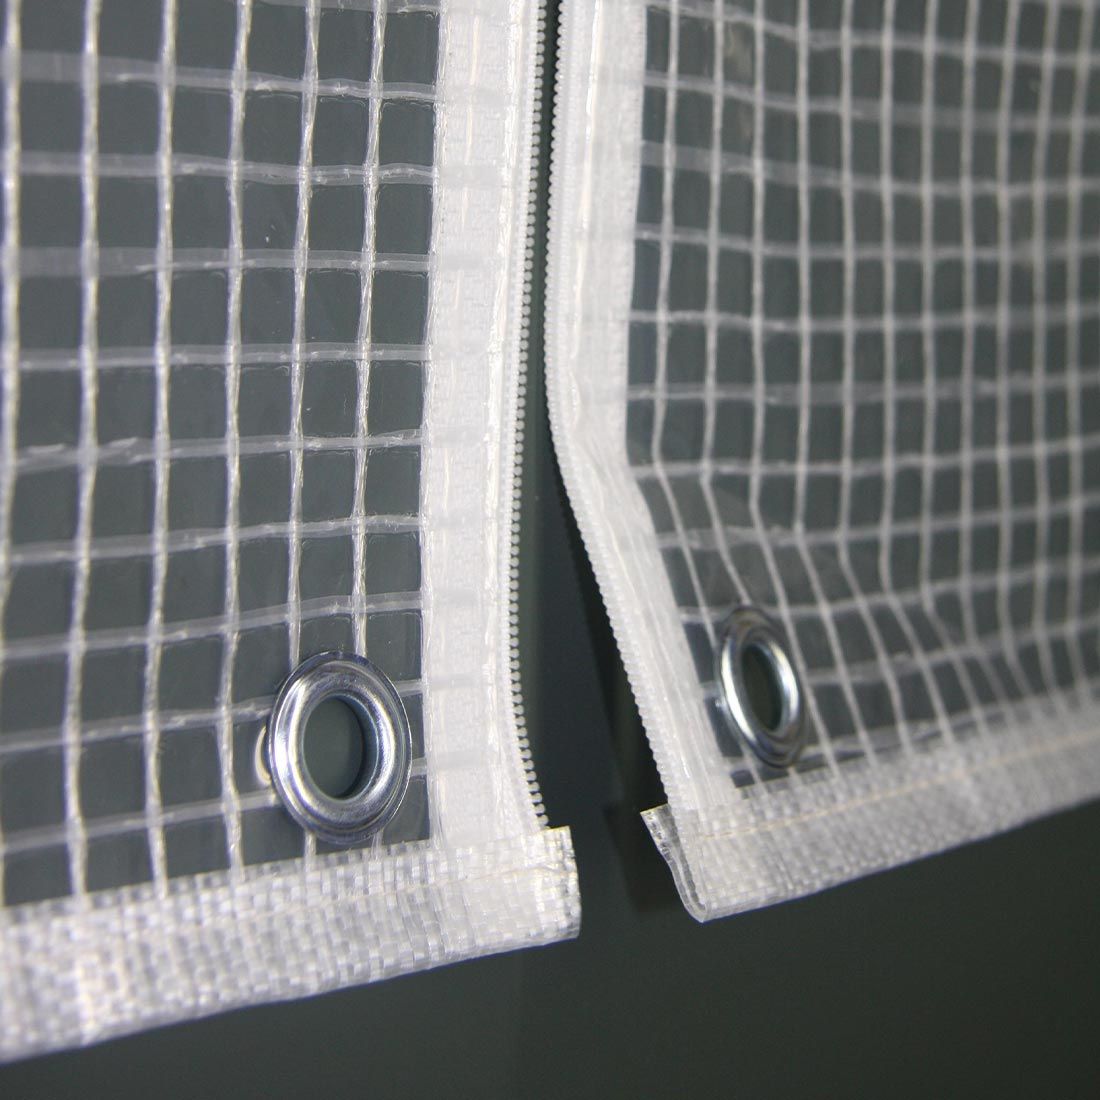 Heinemeyer Schutzhülle 240x180x90cm oval für Tischgruppe, Gitterfolie transparent